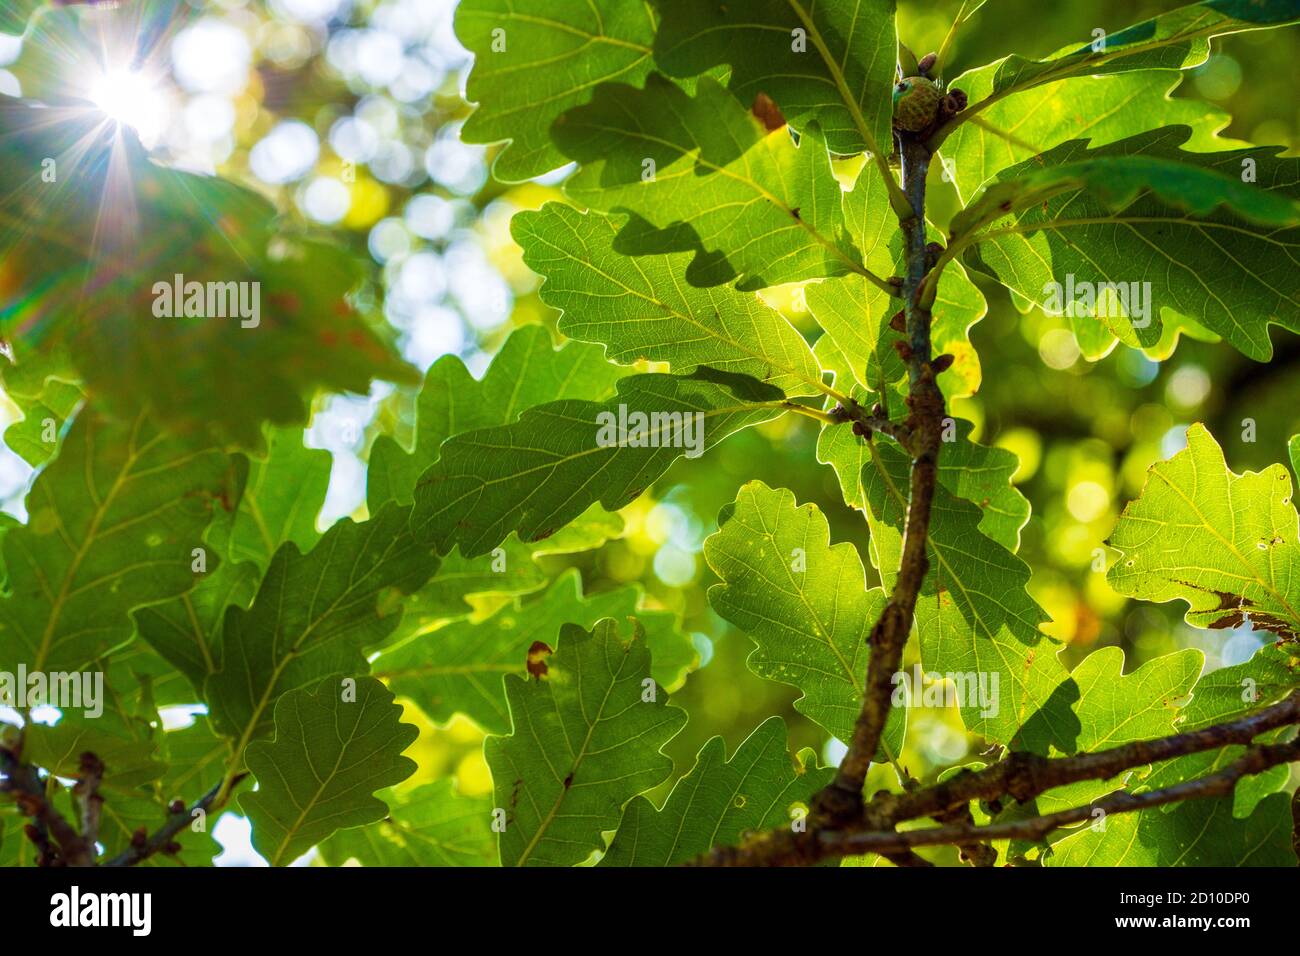 Sunshine shining through canopy of Oak tree leaves in English woodland Stock Photo